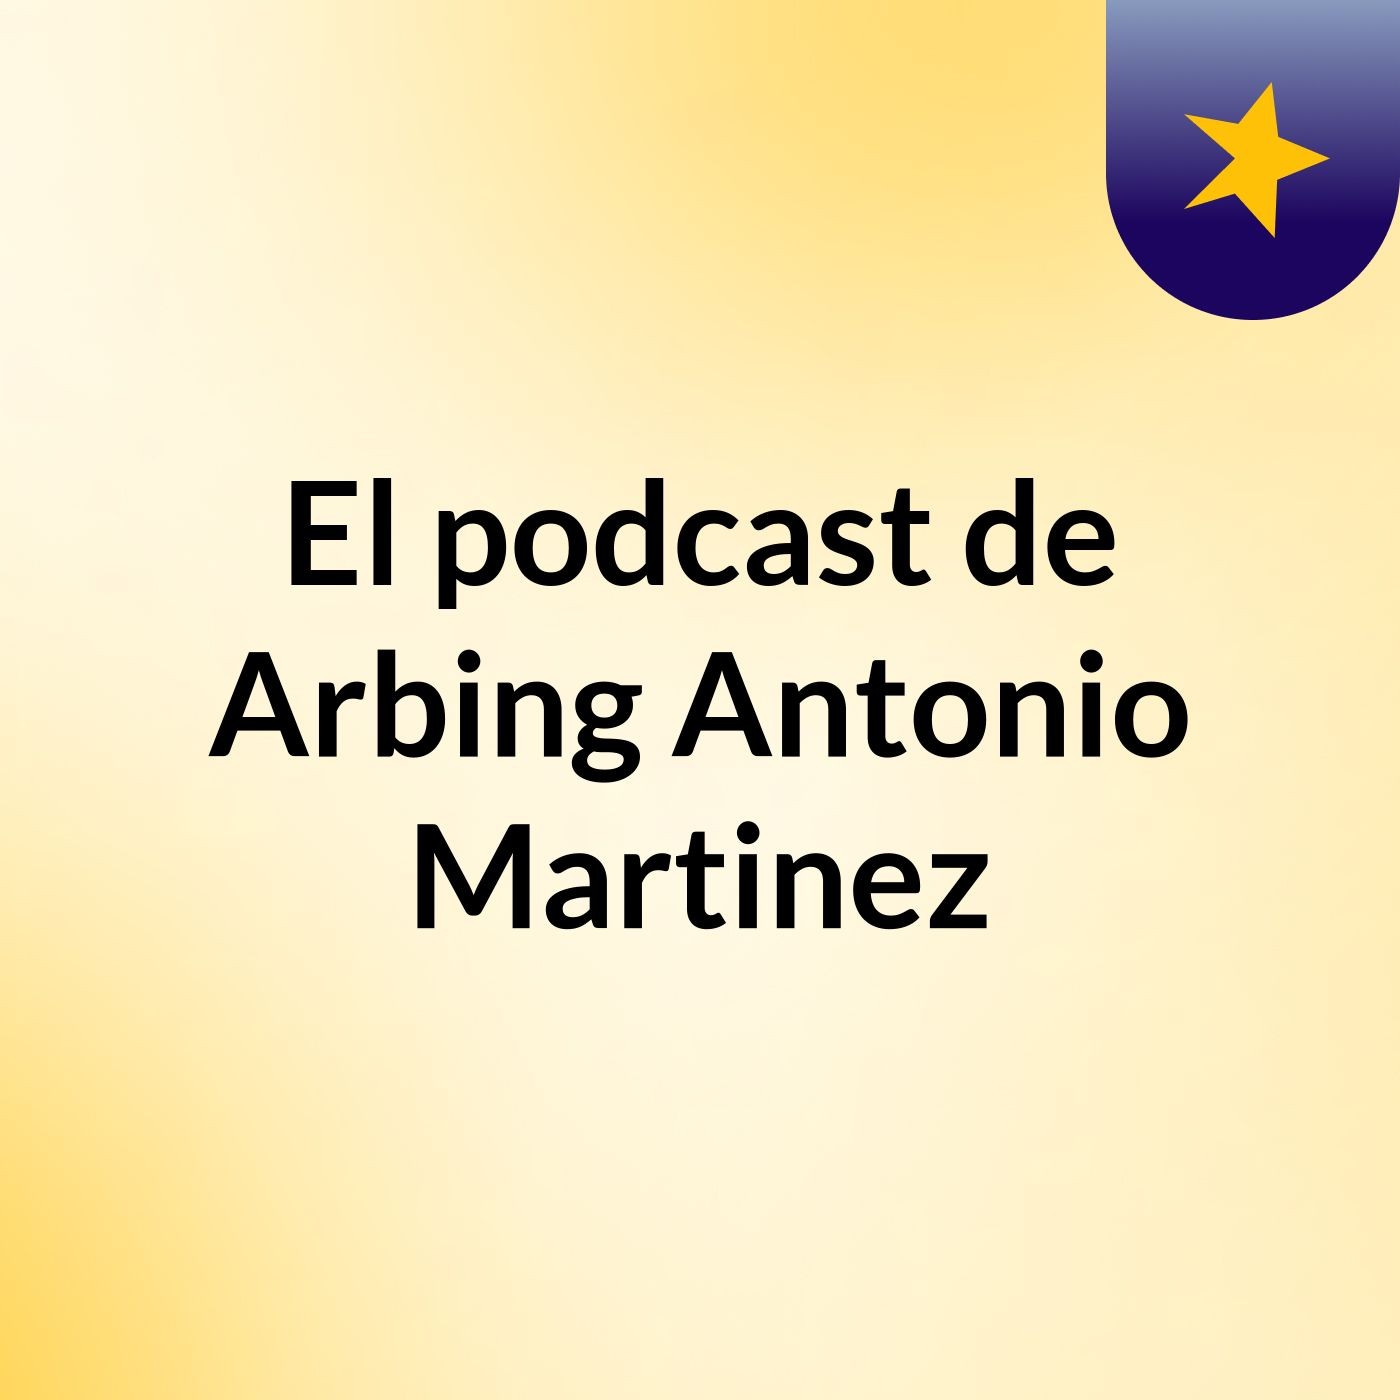 El podcast de Arbing Antonio Martinez